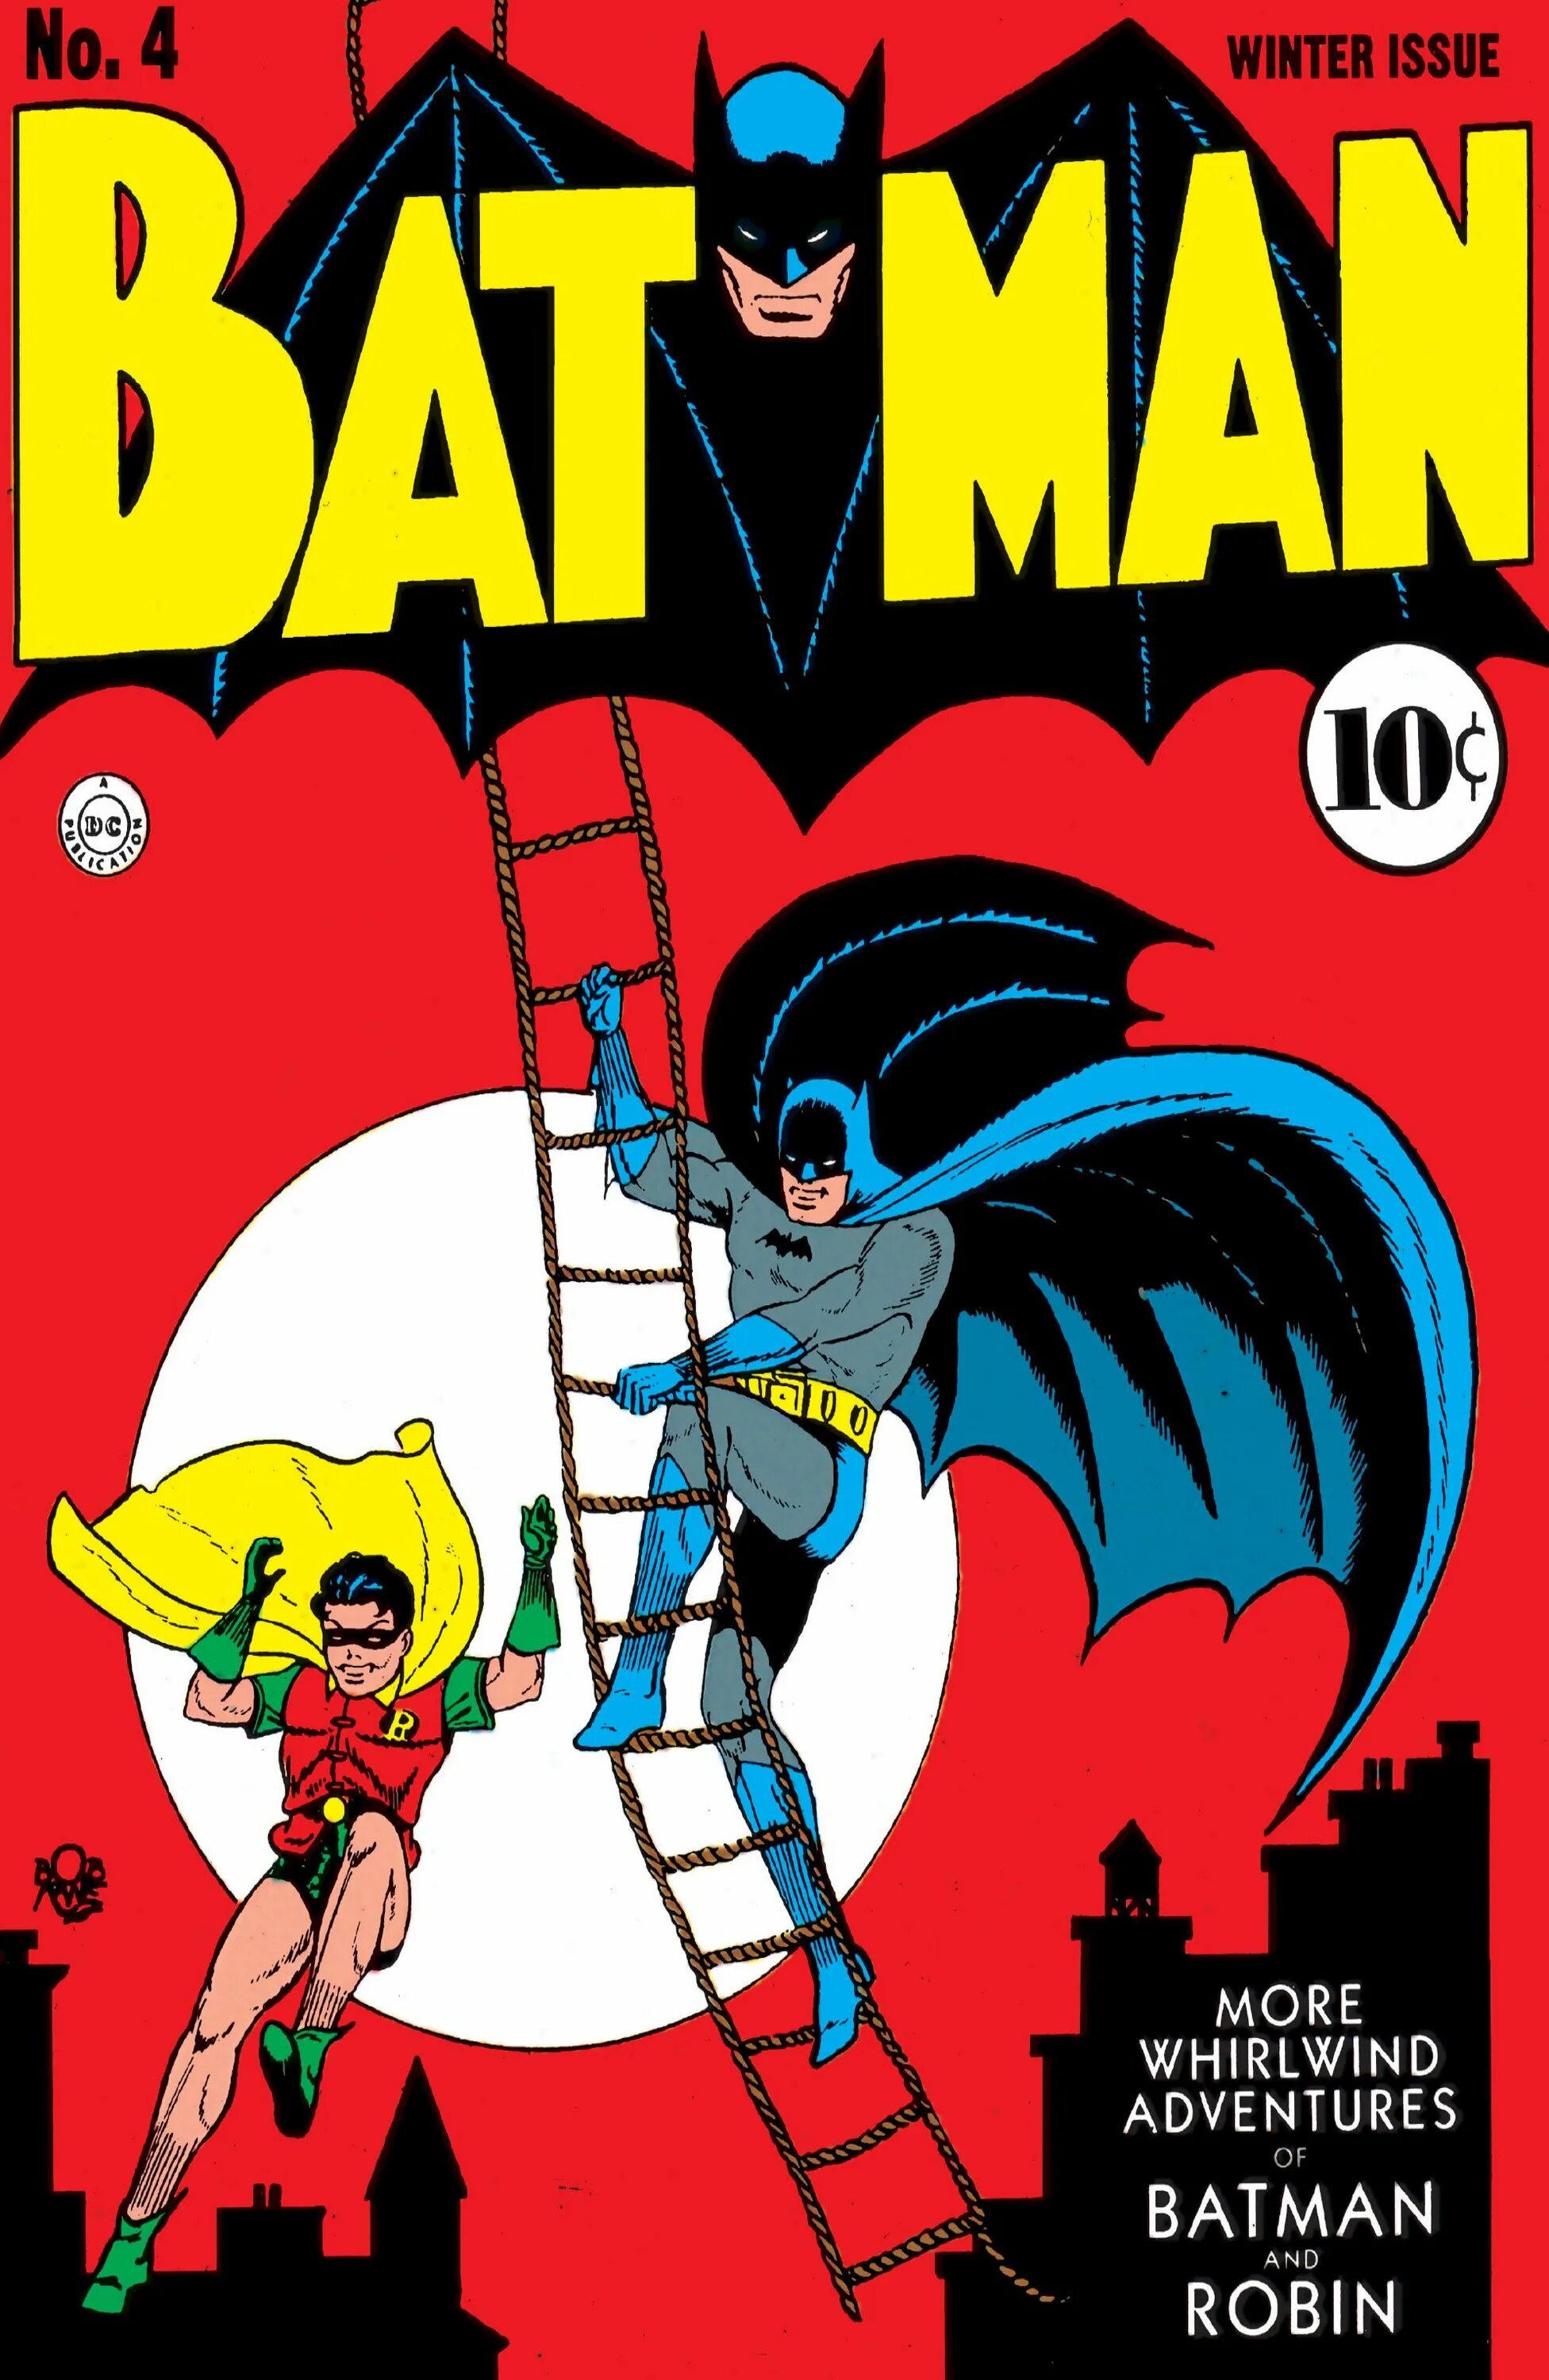 Бэтмен первый комикс. Batman 1940. Первый комикс с Бэтменом. Batman #1 (1940).